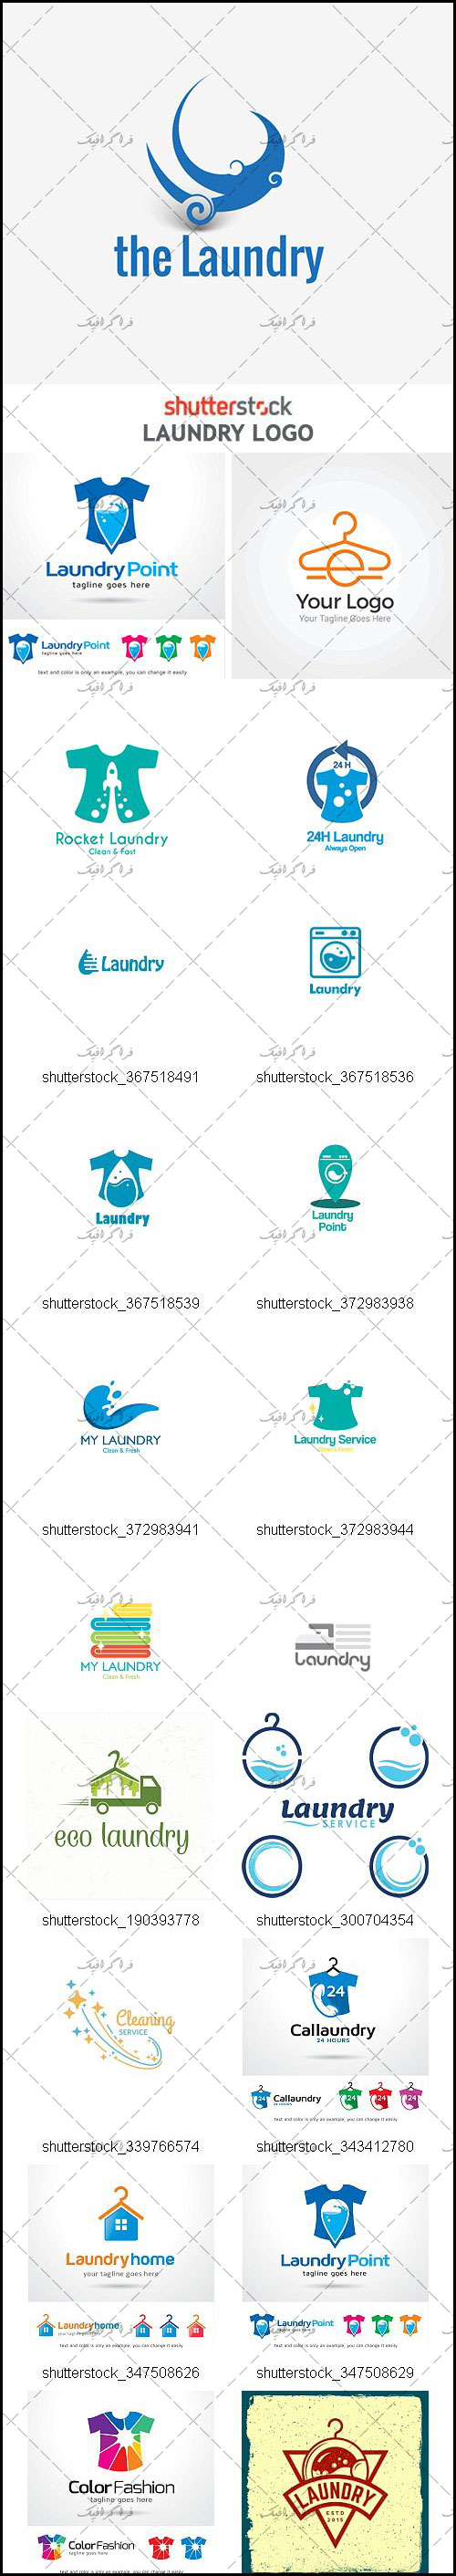 دانلود لوگو های لباسشویی - Laundry Logos